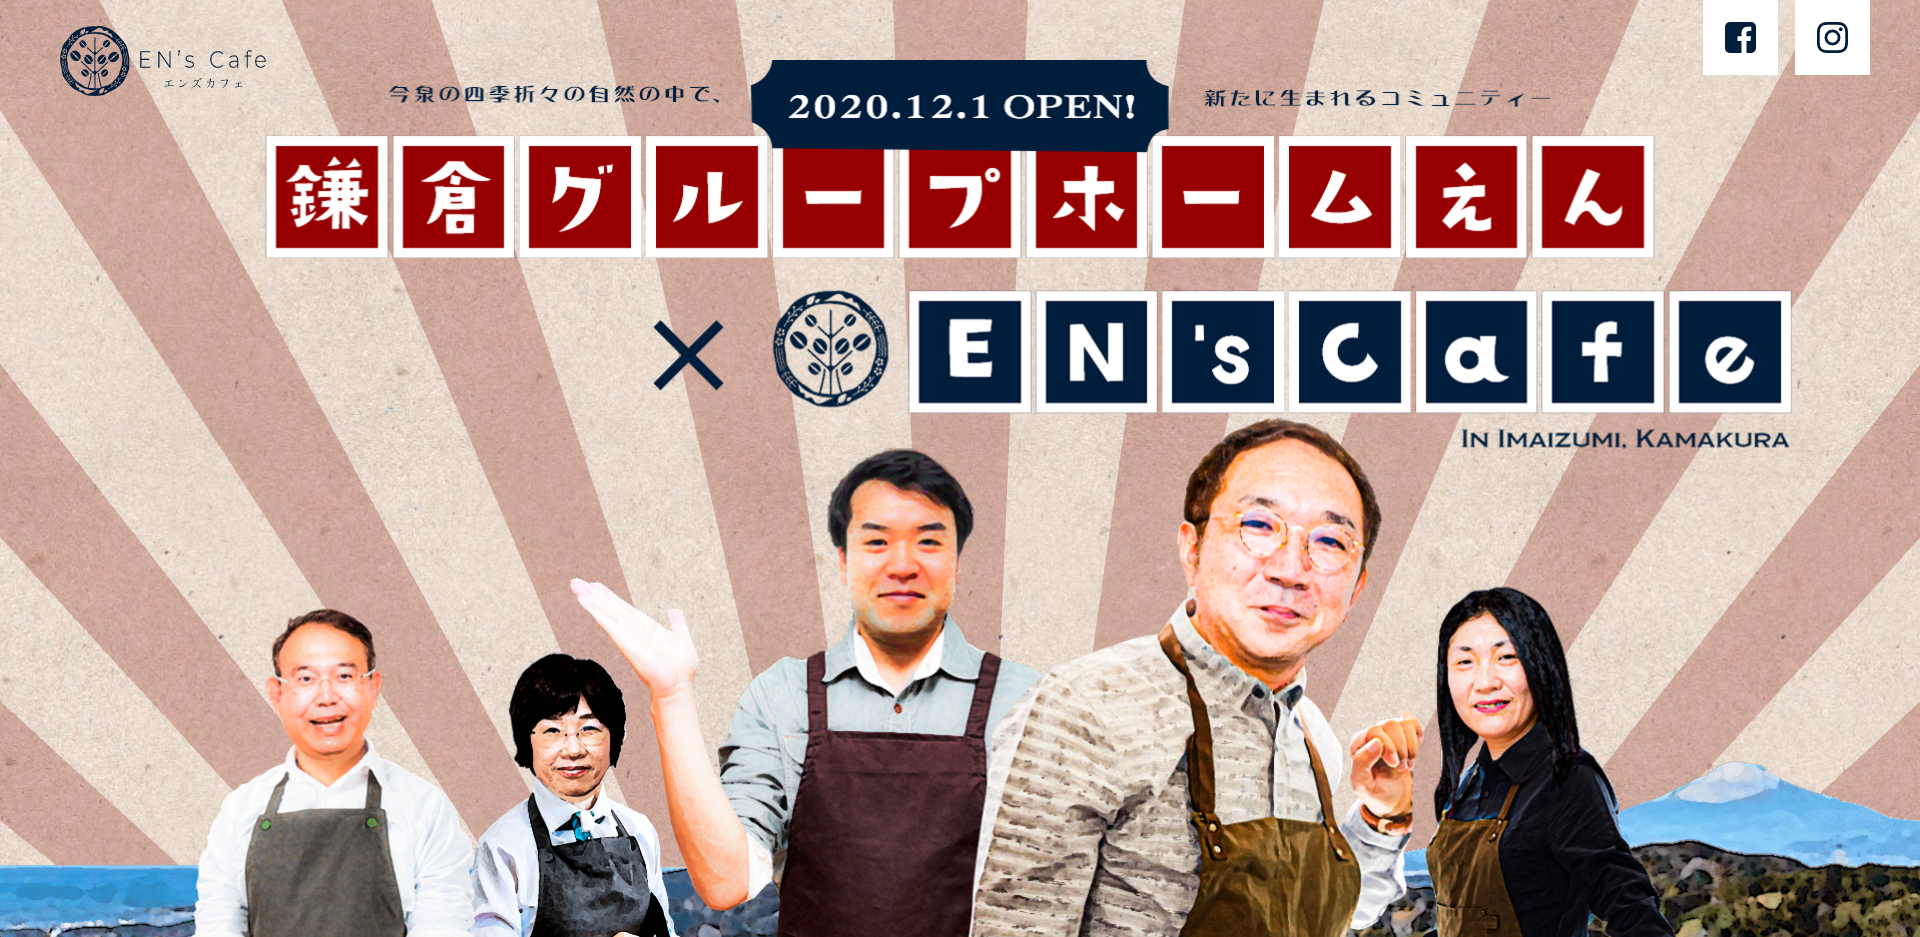 2020年12月1日OPEN予定、「鎌倉グループホームえん＆EN’s cafe」特設WEBサイトがOPENしました。 ぜひご覧ください。